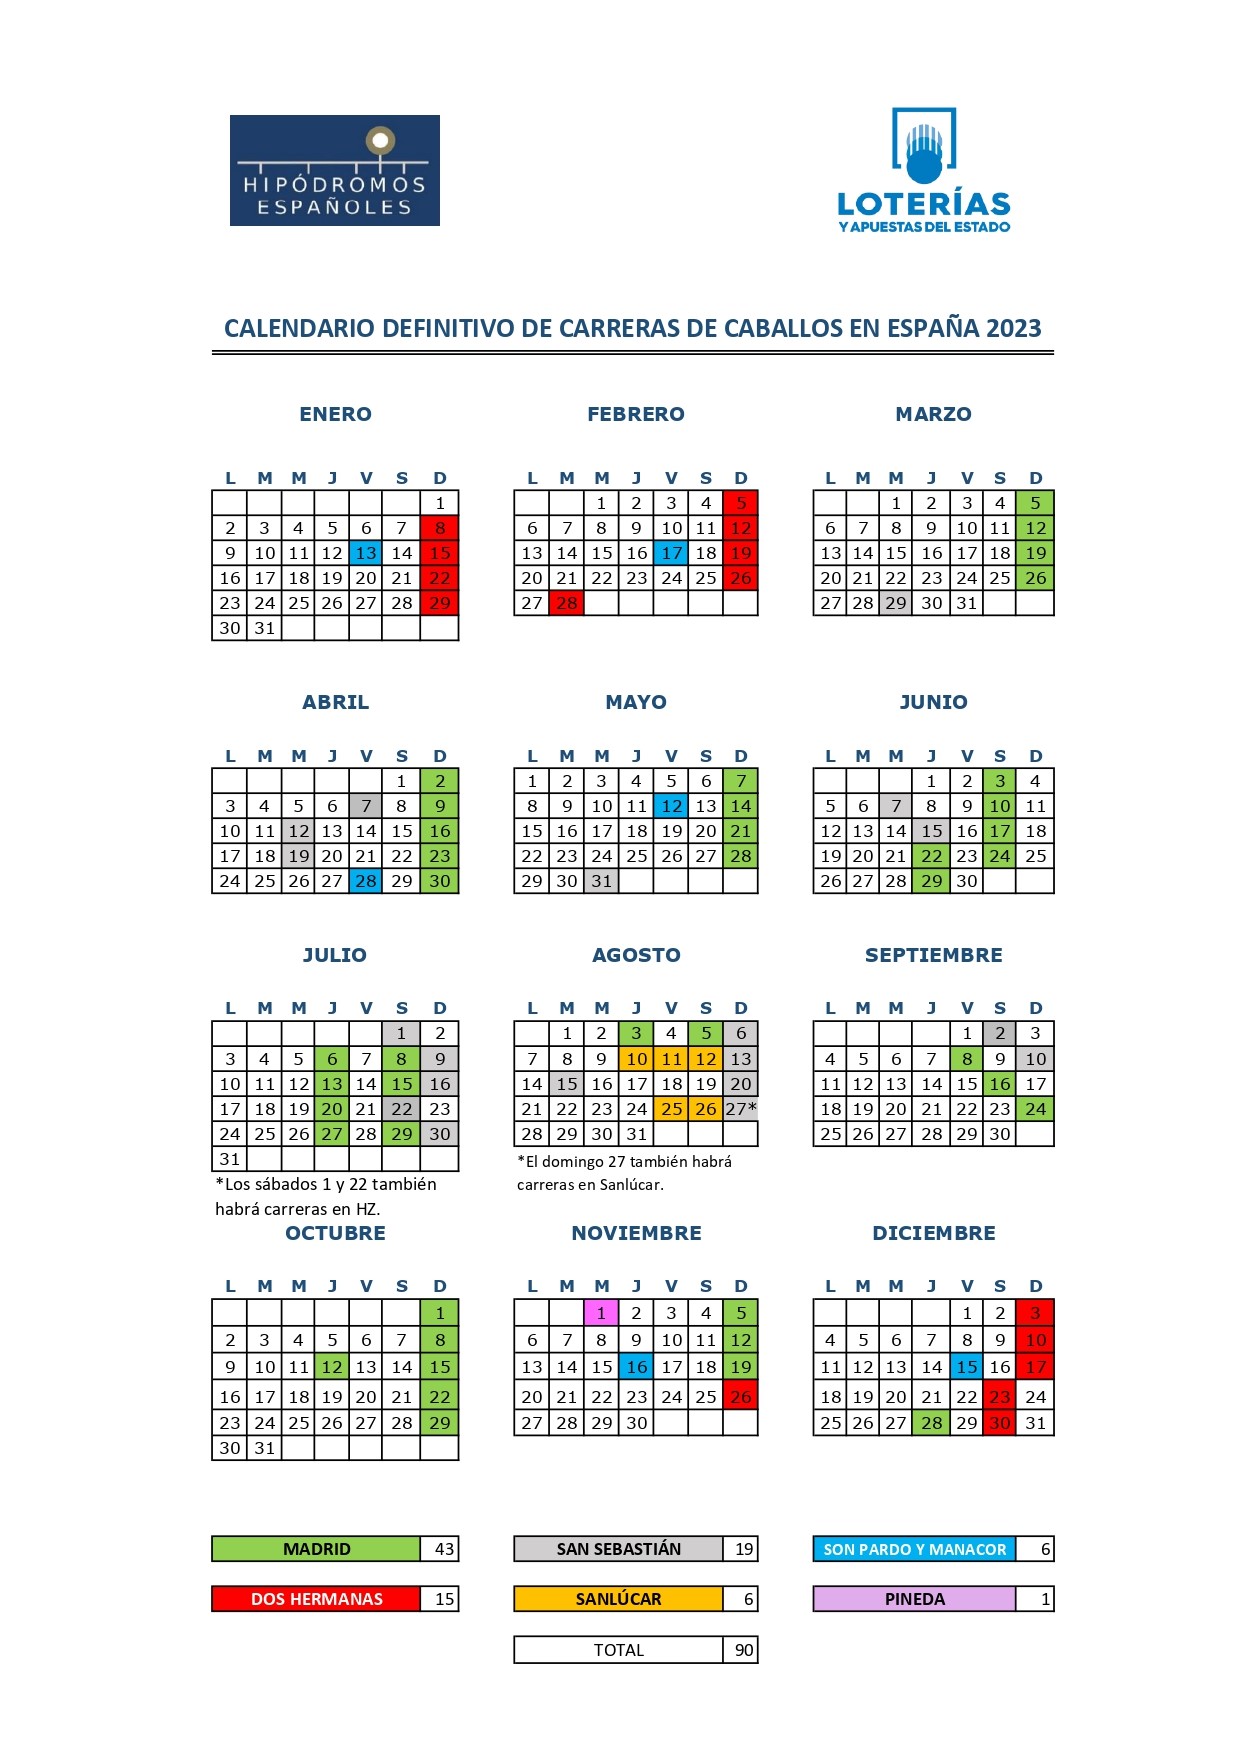 Calendario jornadas definitivo 2023